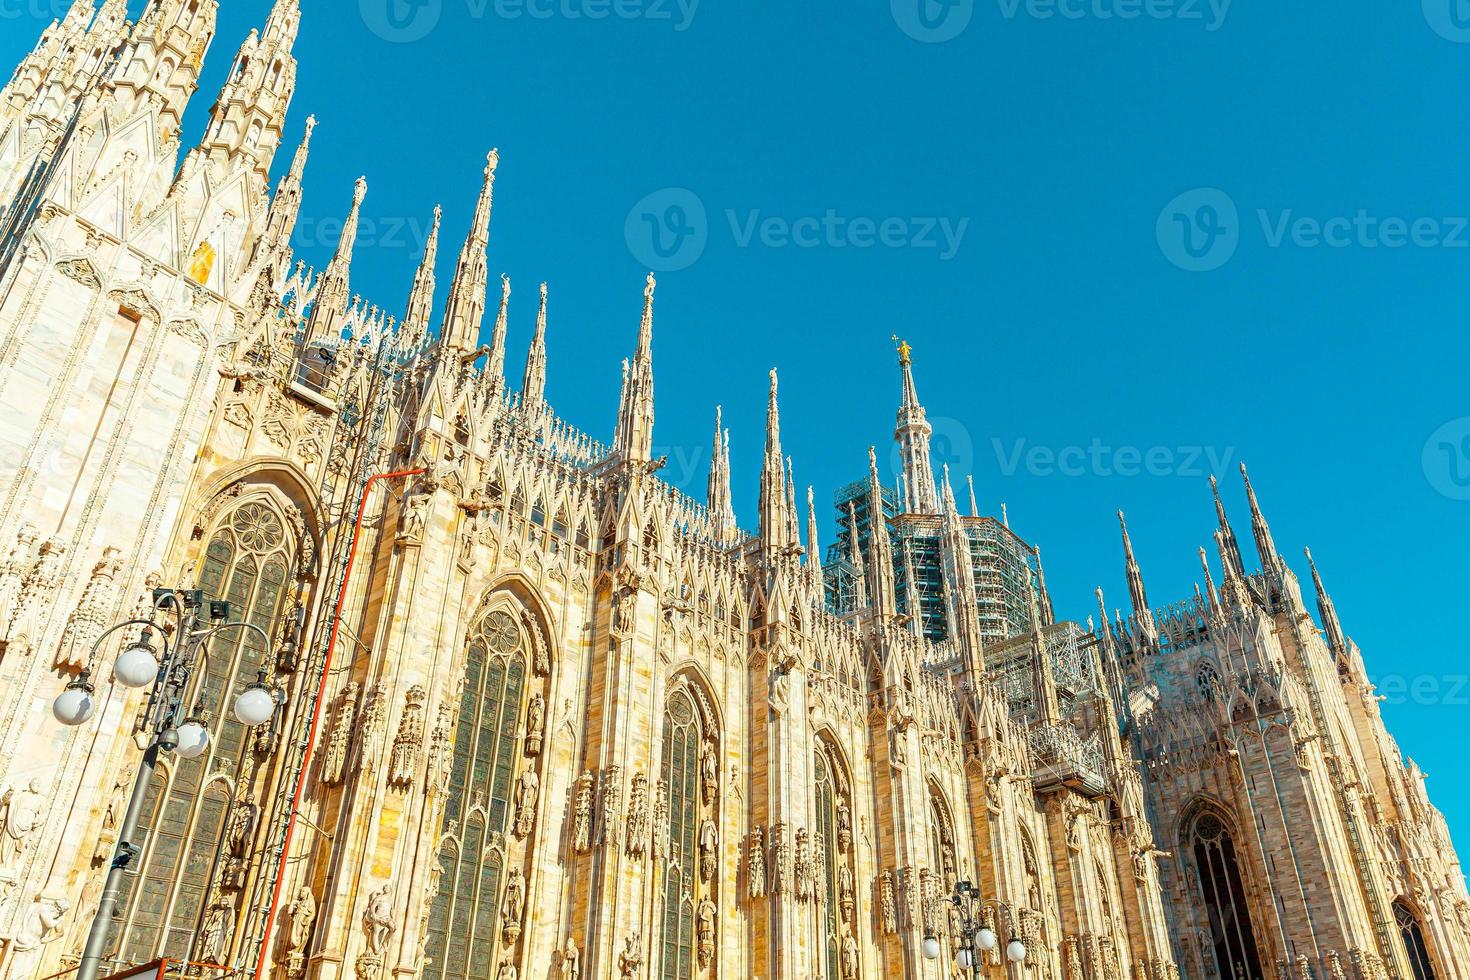 berühmte kirche mailänder kathedrale duomo di milano mit gotischen spitzen und weißen marmorstatuen. Top-Touristenattraktion auf der Piazza in Mailand Lombardei Italien. Weitwinkelansicht der alten gotischen Architektur und Kunst foto